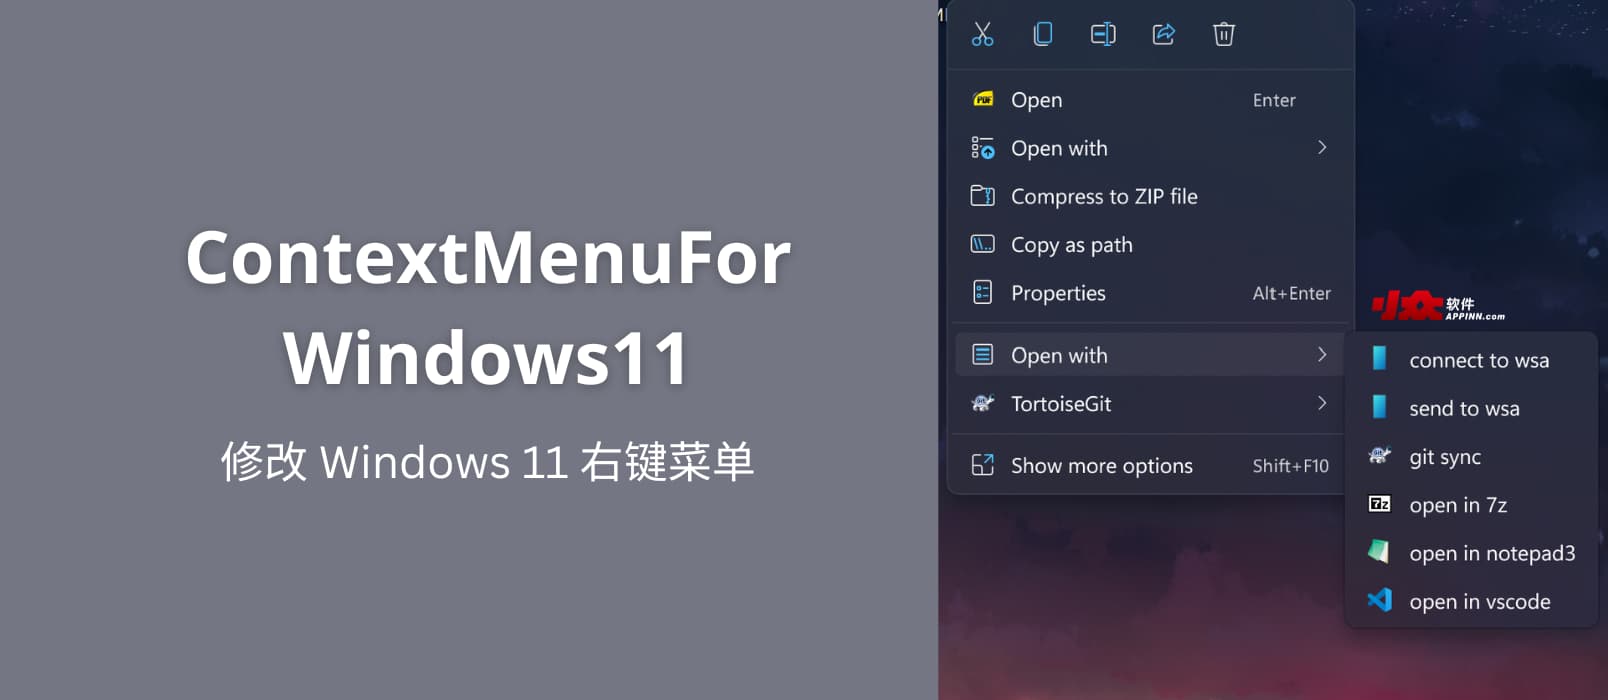 ContextMenuForWindows11 - 修改 Windows 11 右键菜单